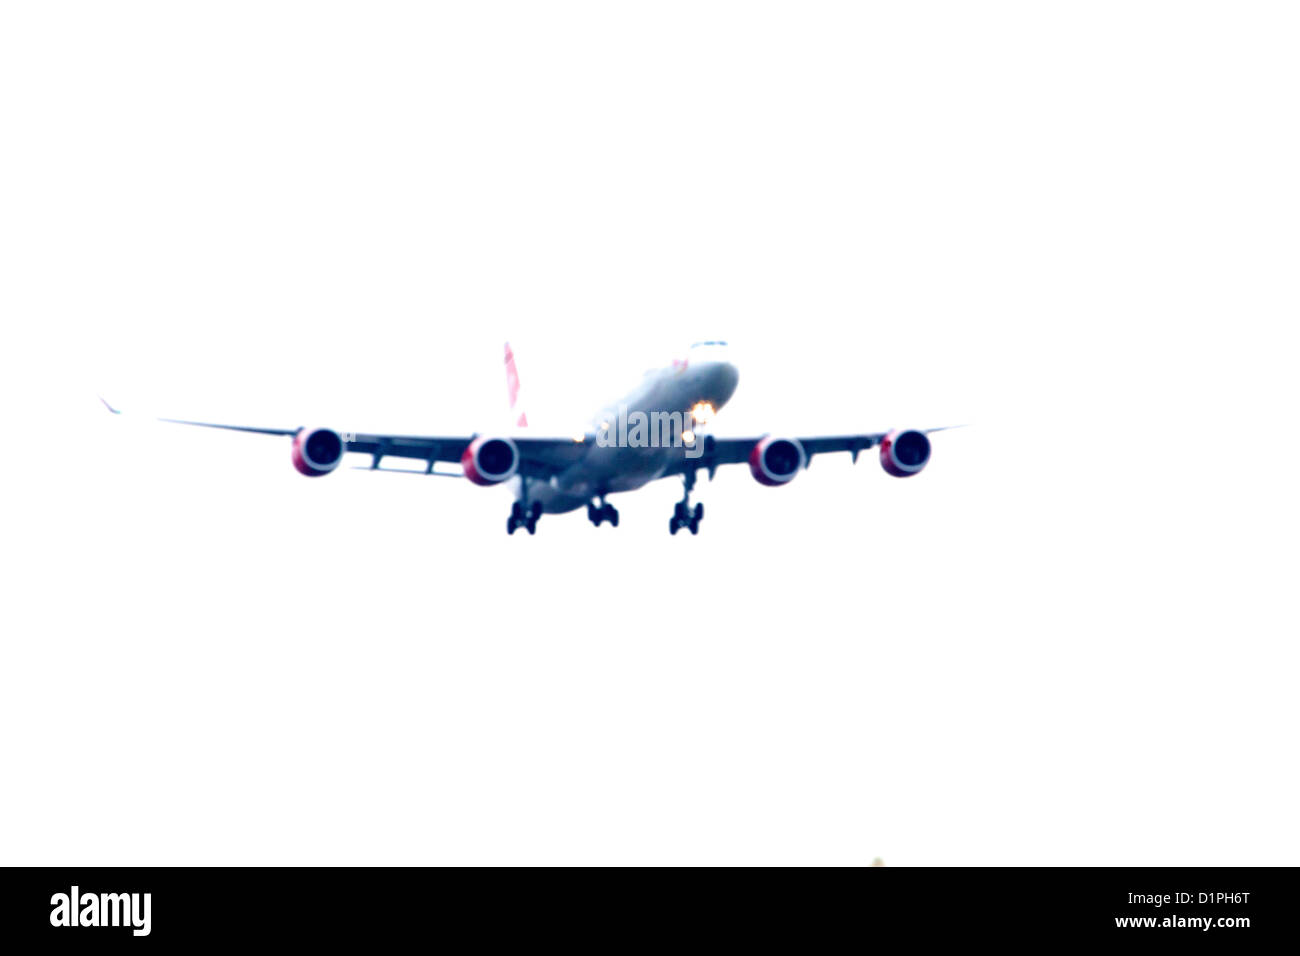 Avion de ligne vierge en venant d'atterrir à l'aéroport Heathrow de Londres Banque D'Images